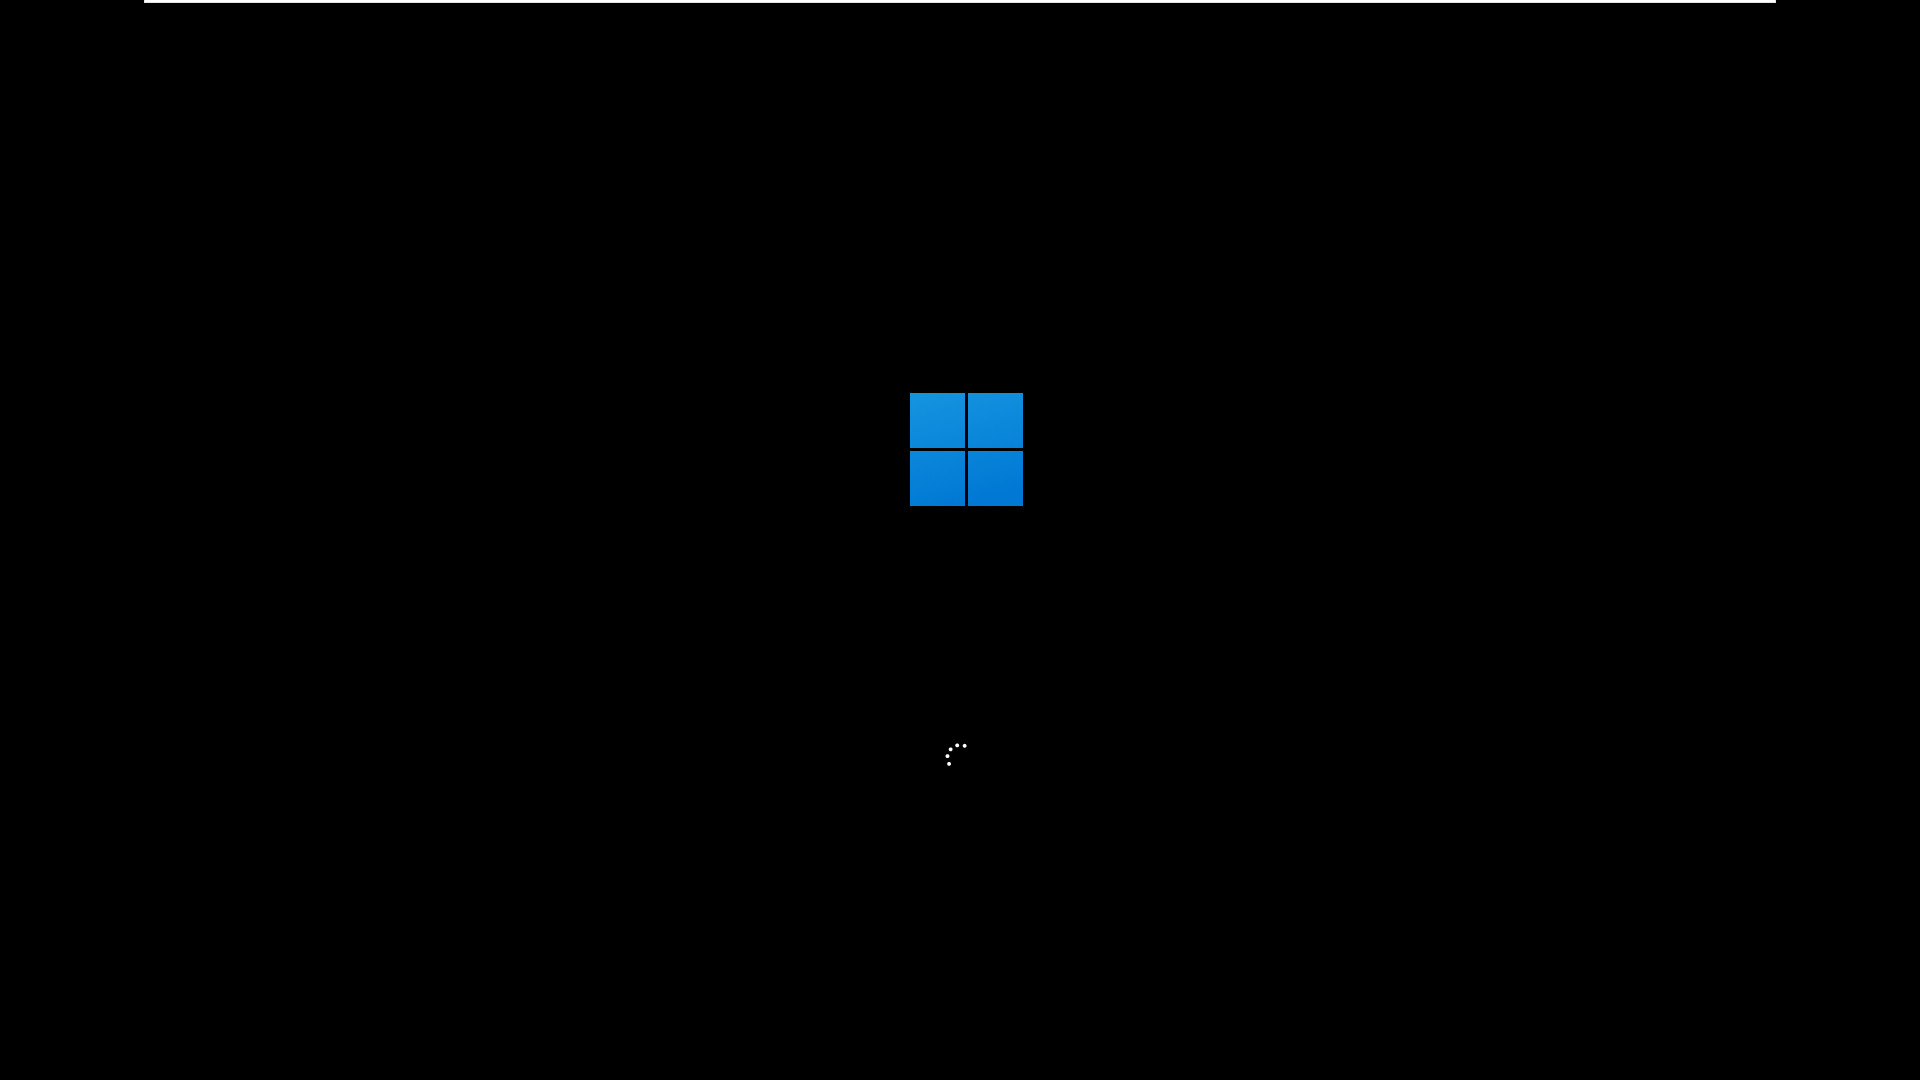 유출된 Windows 11 (OS Build 21996.1) 설치 테스트 - vmware - 윈도우 10과 크게 다르게는 느껴지지 않습니다 2021-06-16_063131.jpg